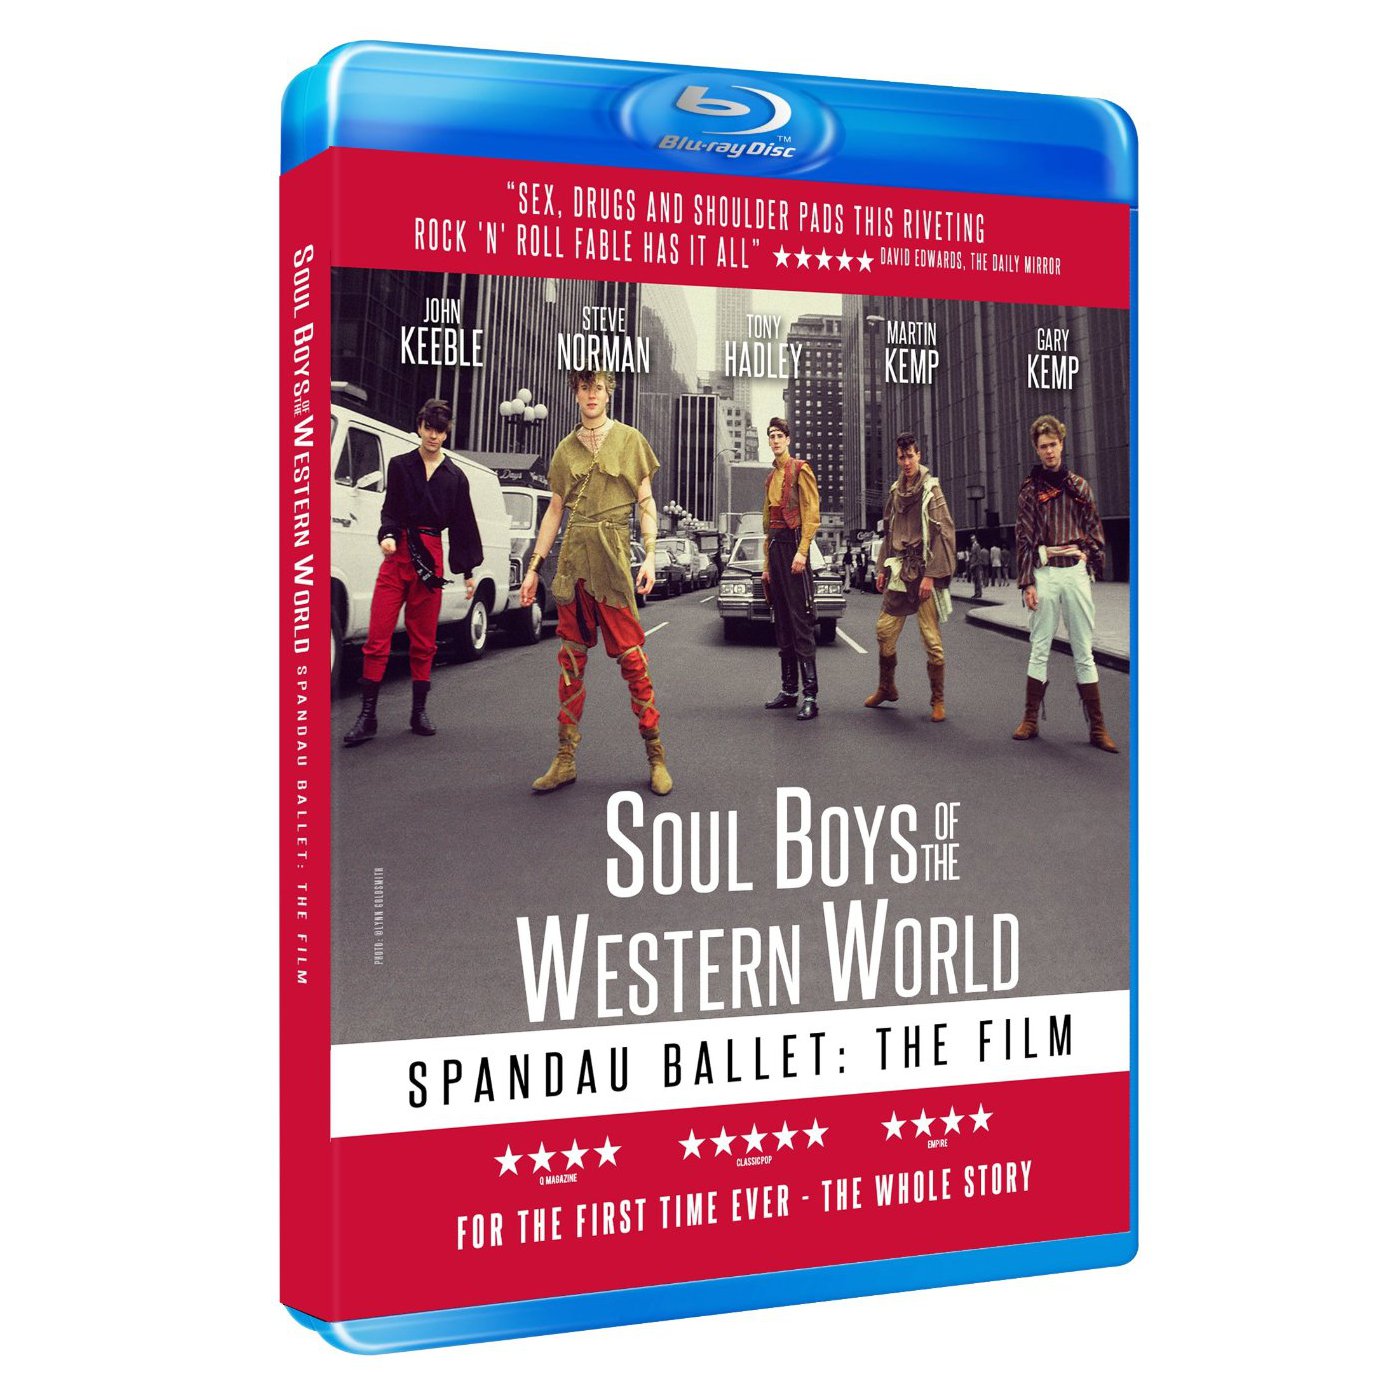 Spandau Ballet - Spandau Ballet The Film - Soul Boys Of The Western World: Blu-Ray